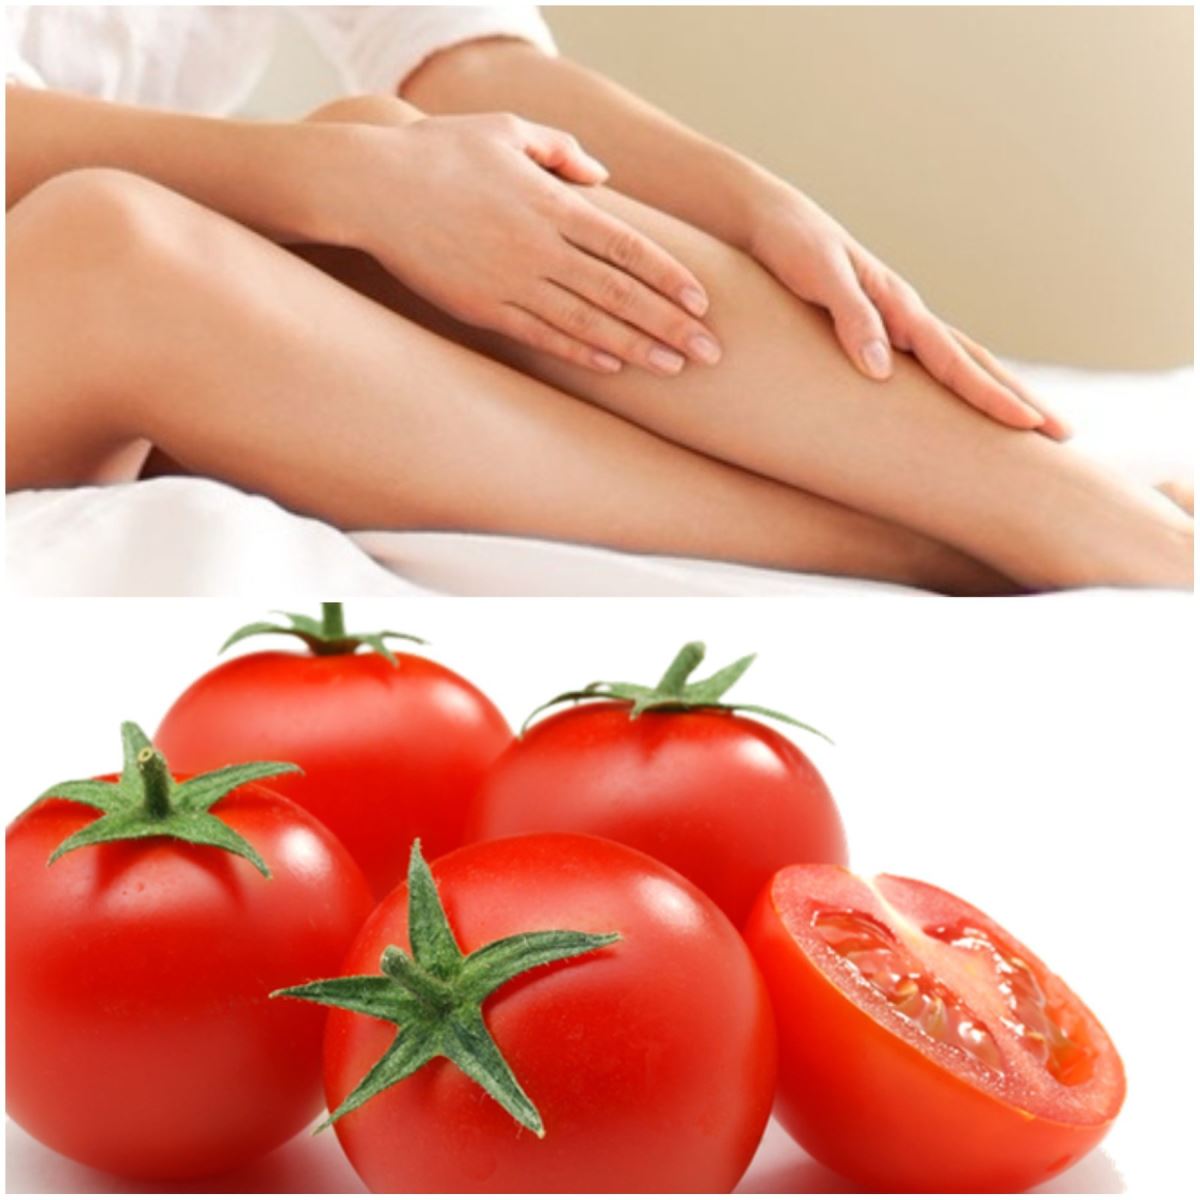 cách làm rụng lông chân bằng cà chua